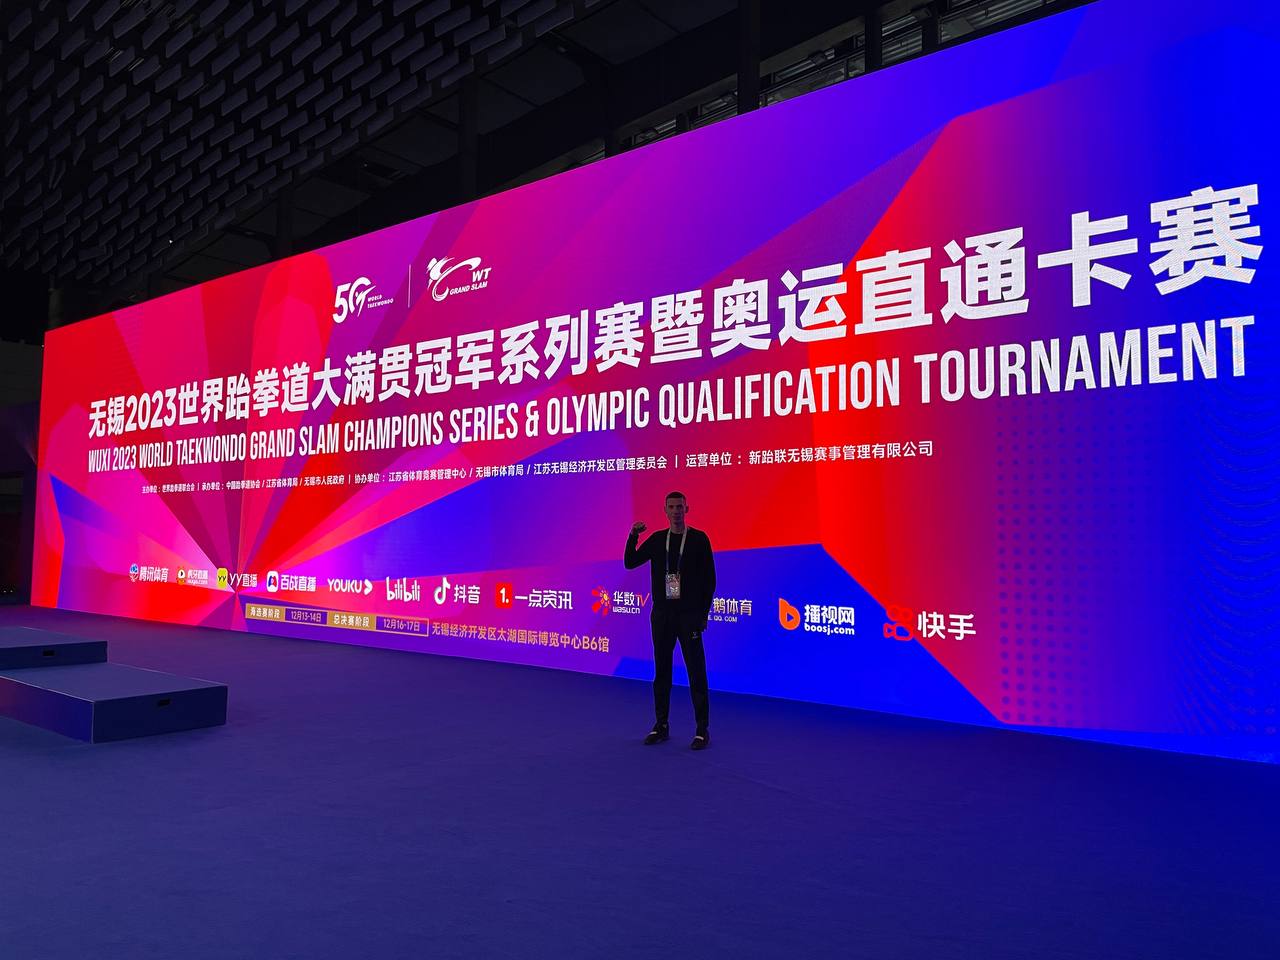 Илья Данилов принял участие в турнире мировой серии Grand Slam в Китае (13-16 декабря 2023 г., г. Уси)